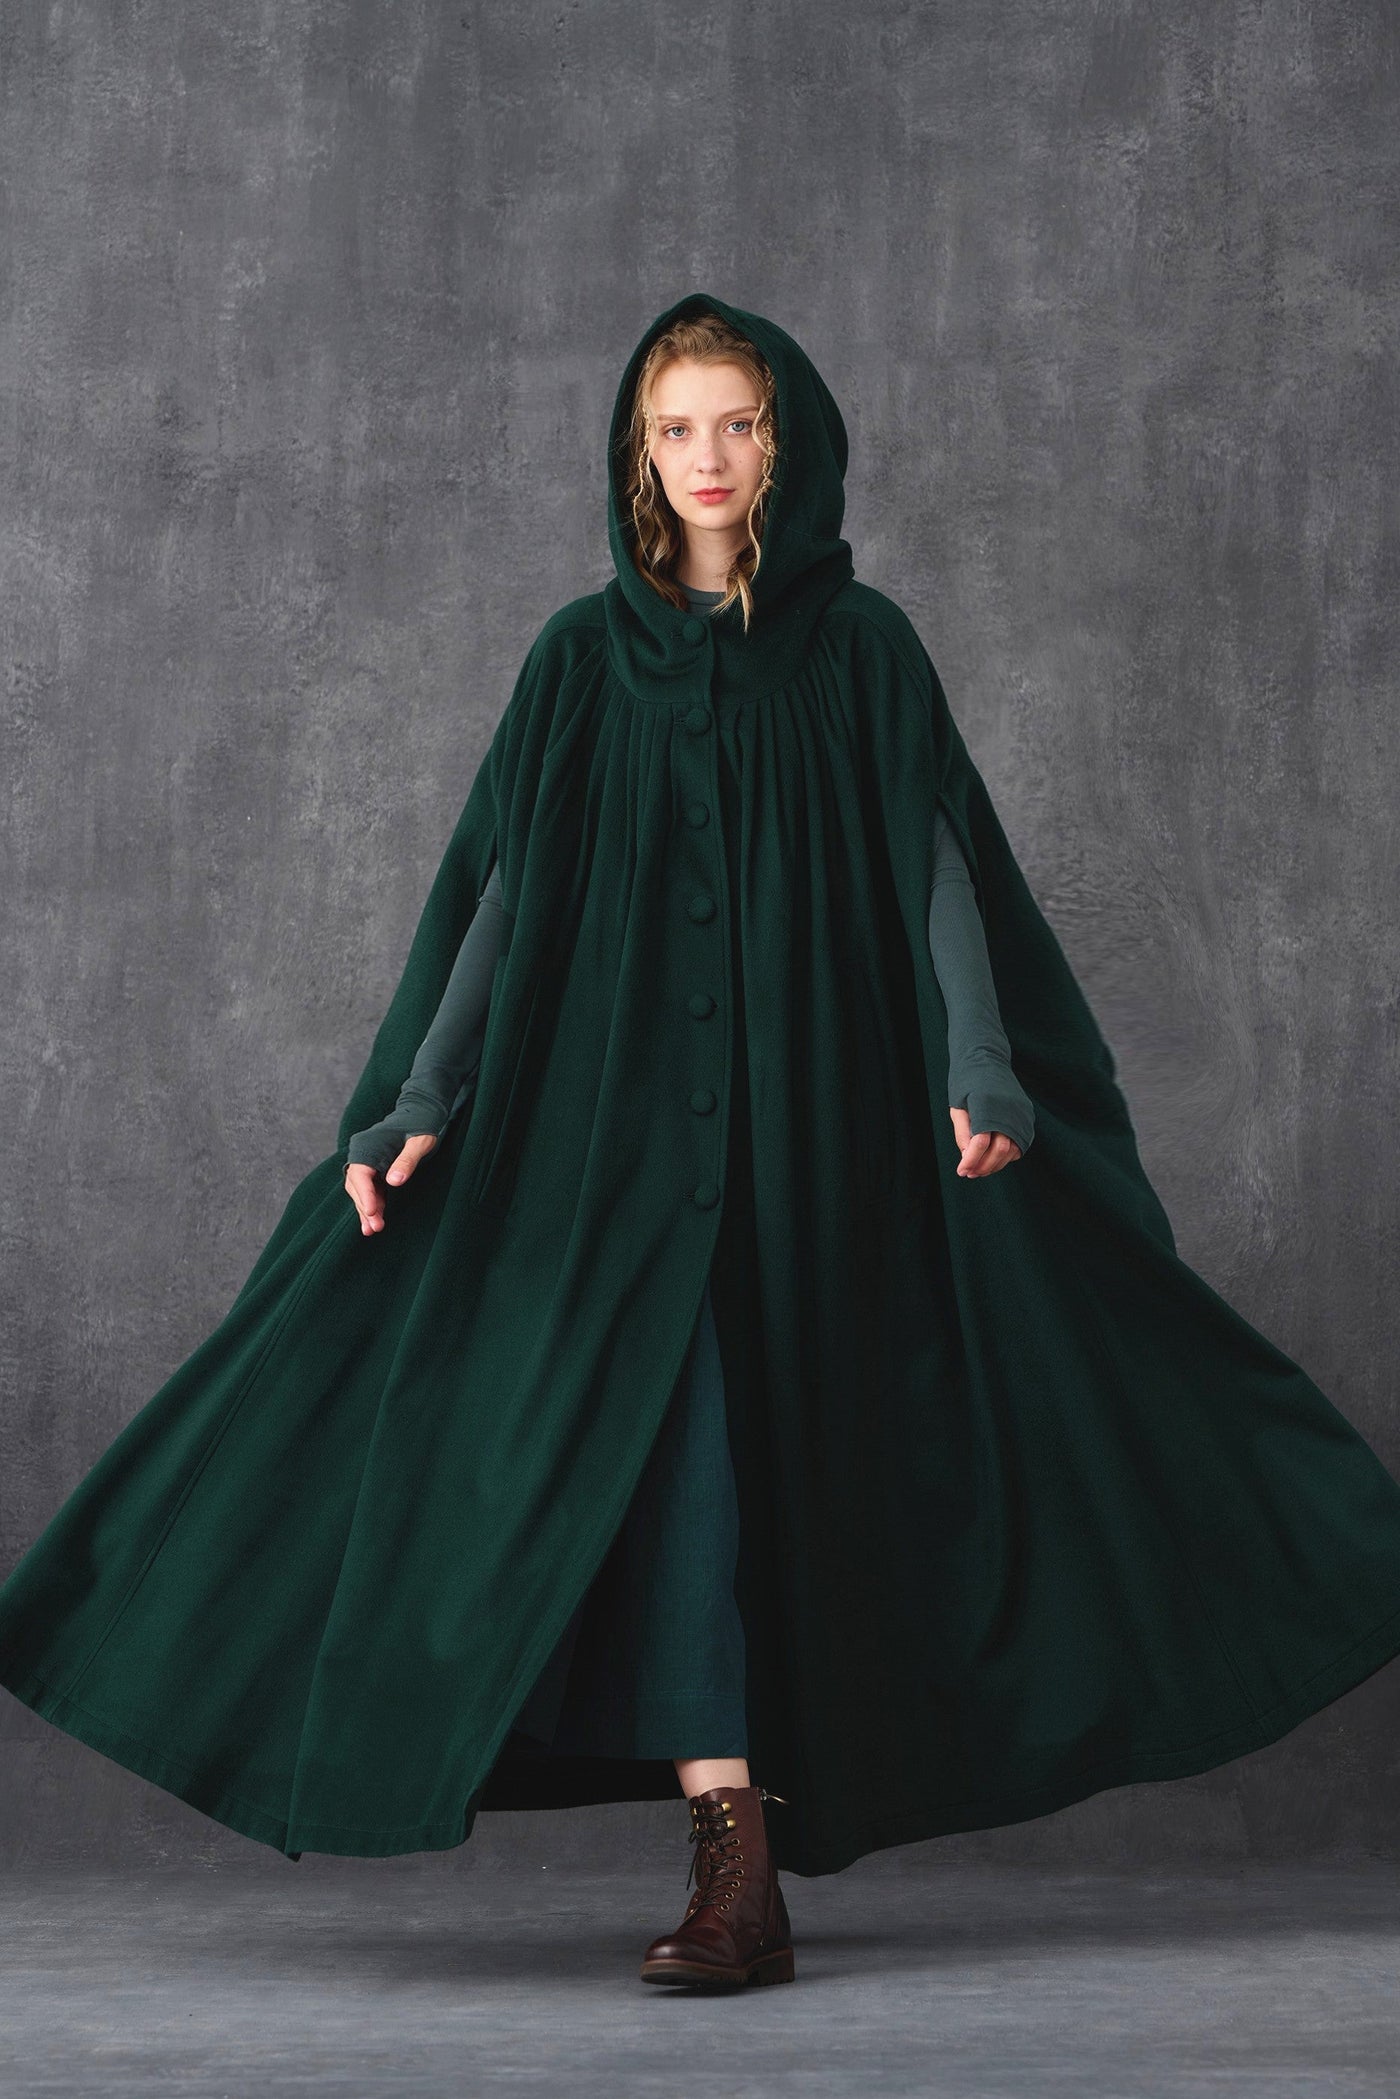 Ariel 14 | Hooded Wool Cloak Coat in DarkGray